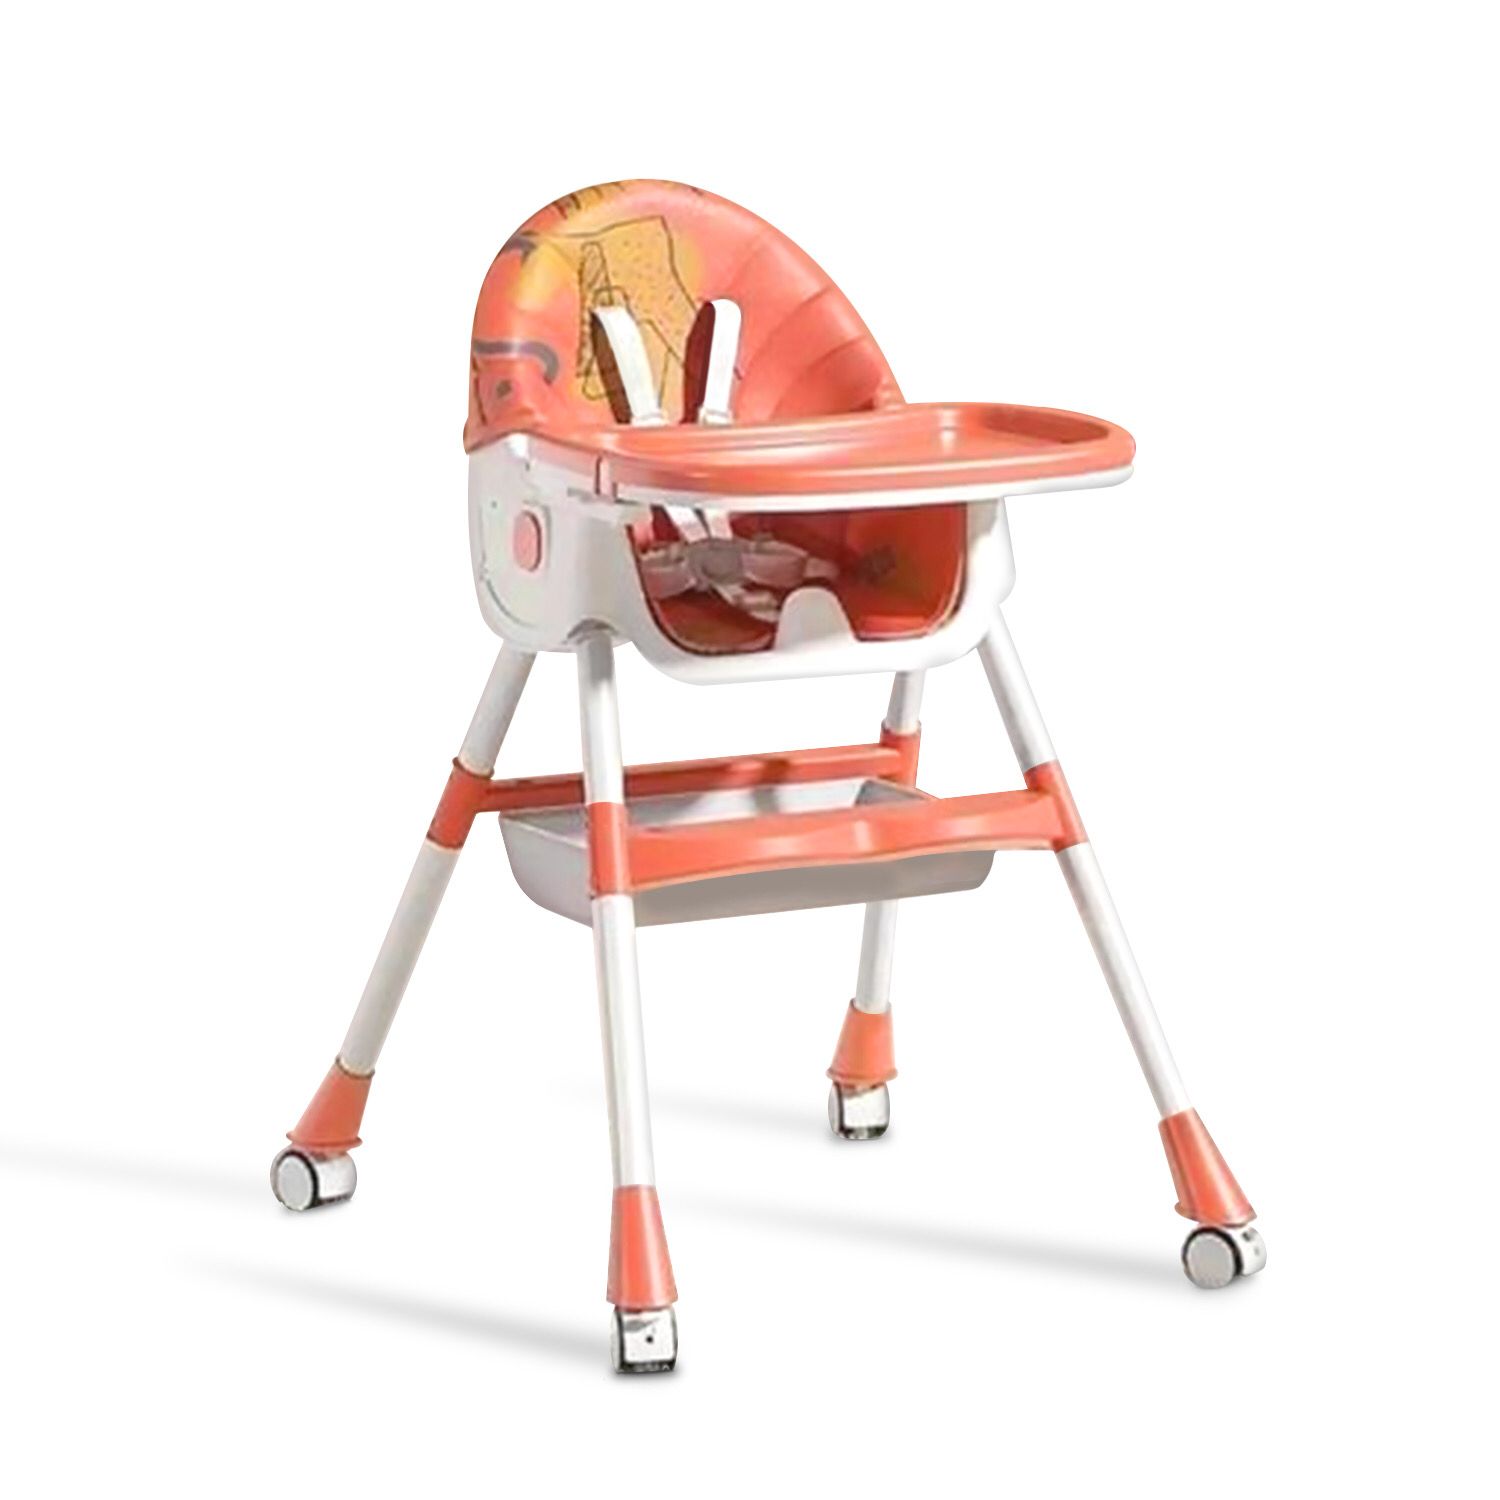 Детский стульчик для кормления Luxmom Q2 оранжевый стульчик для кормления nuovita grande arancione оранжевый